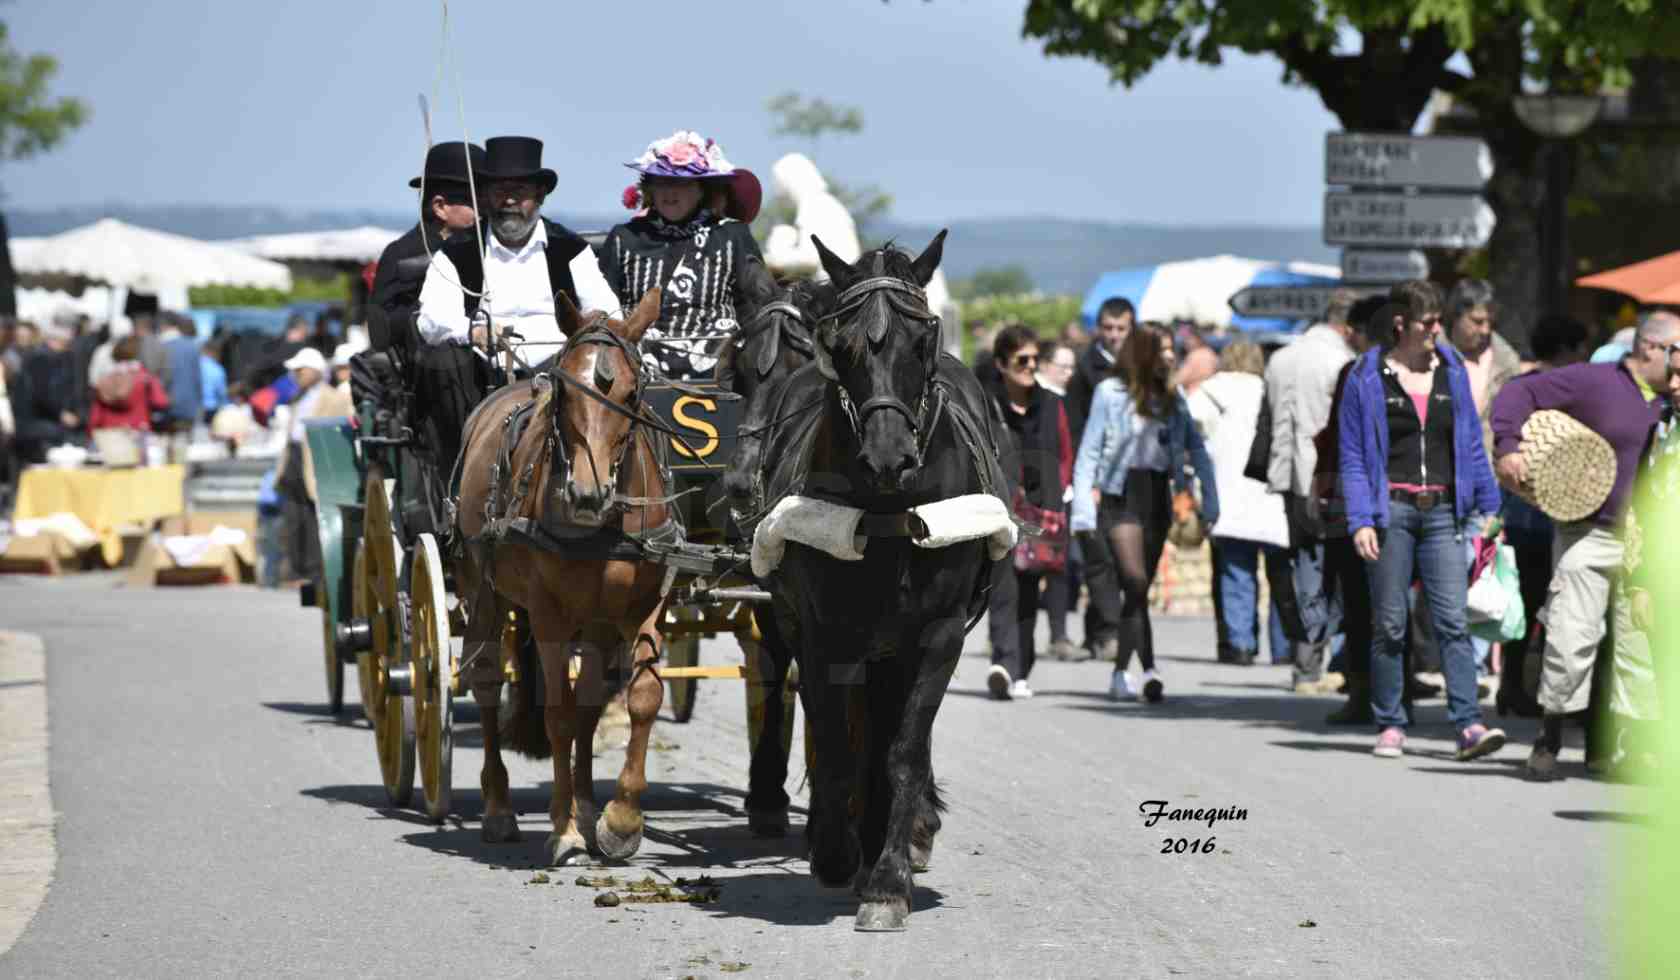 Défilé de calèches de 1900 dans les rues de Villeneuve d'Aveyron le 15 mai 2016 - Attelage en arbalète de 3 chevaux - calèche 4 roues - 2